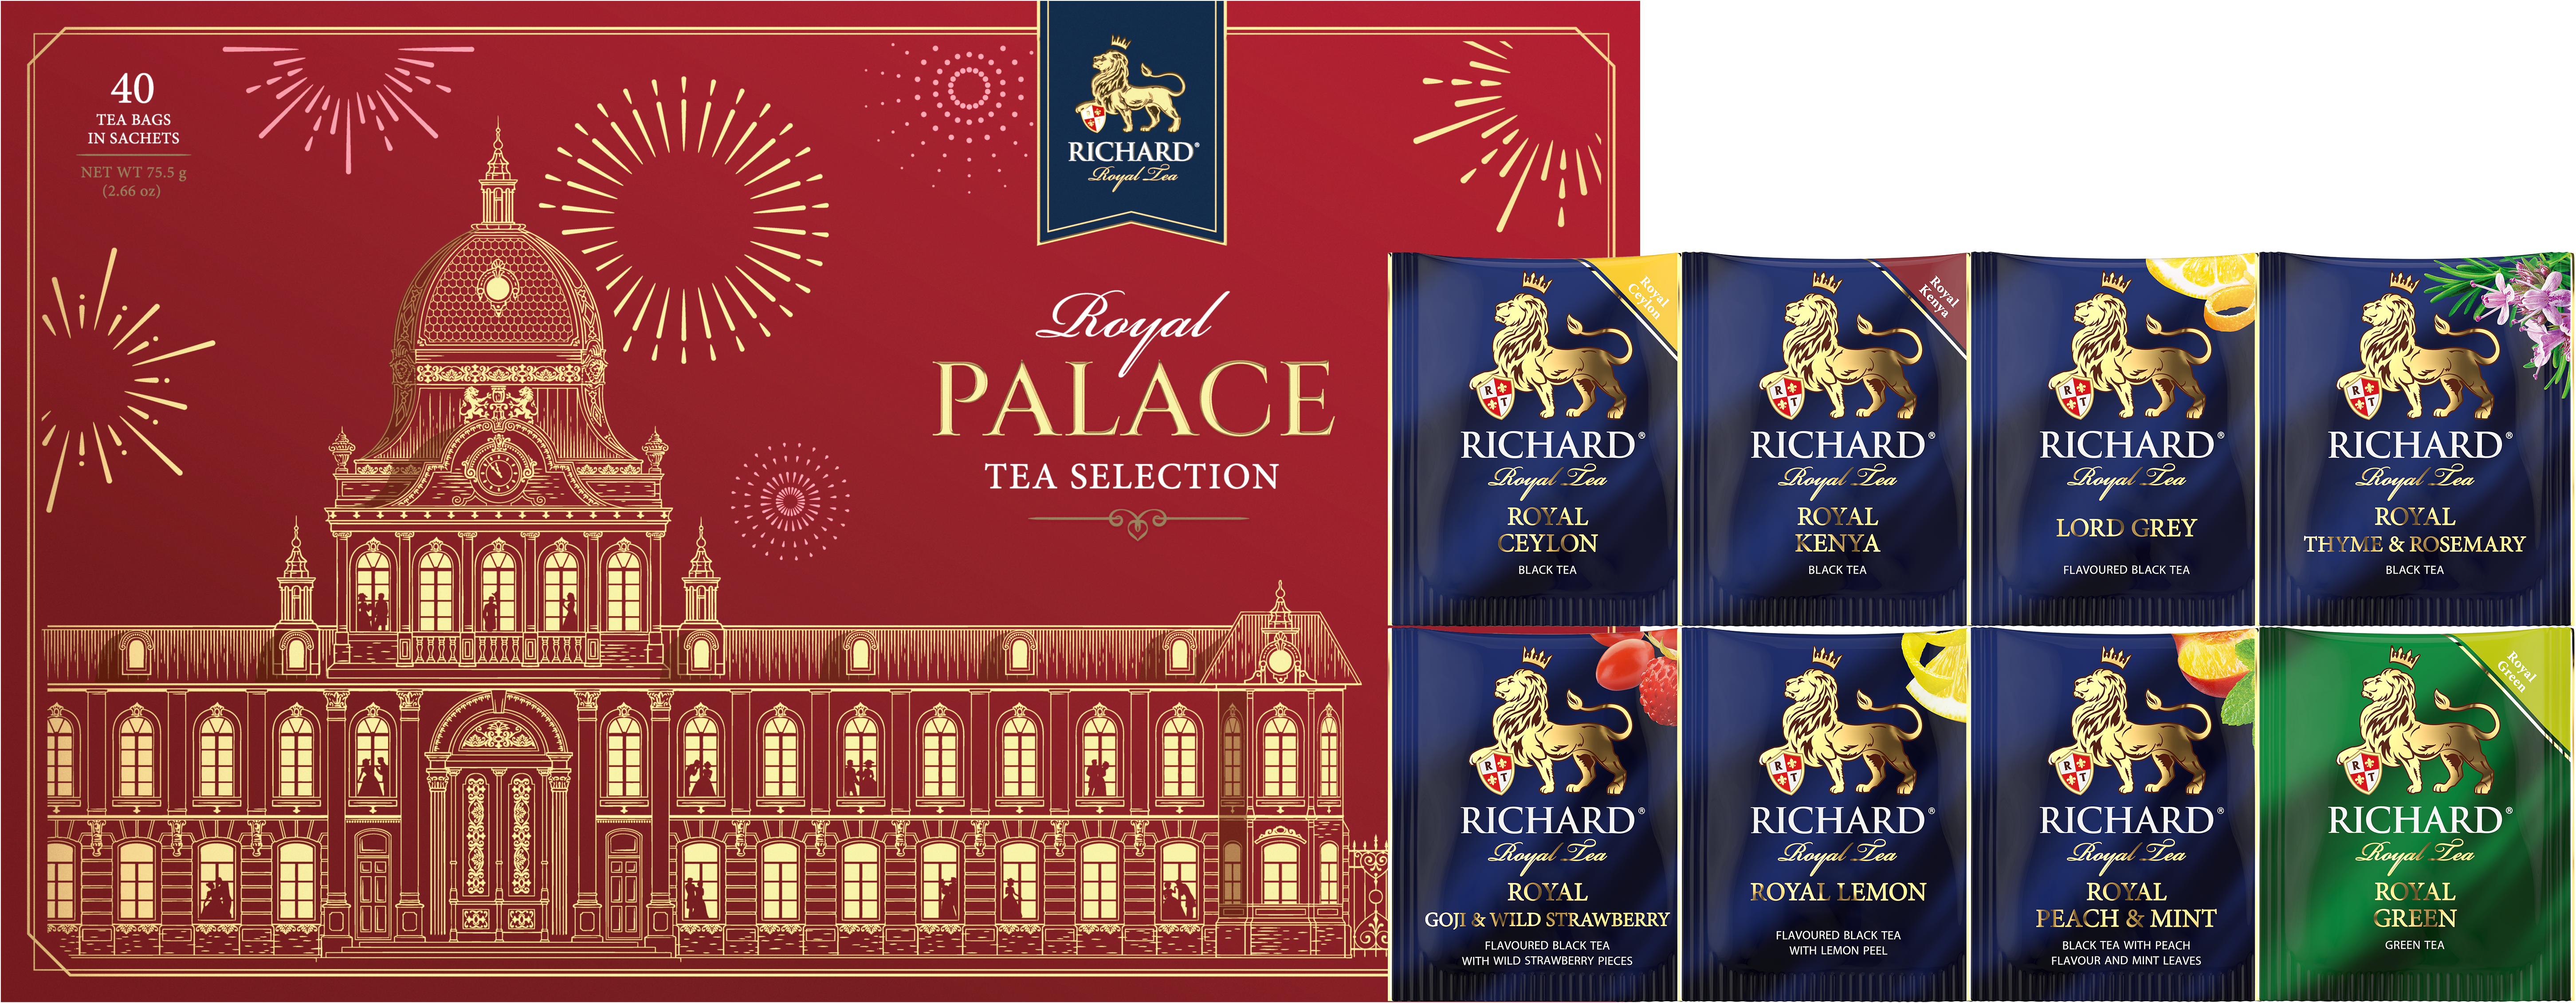 Richard Royal Palace Tea Selection - Kombinacija čajeva, 75.5g